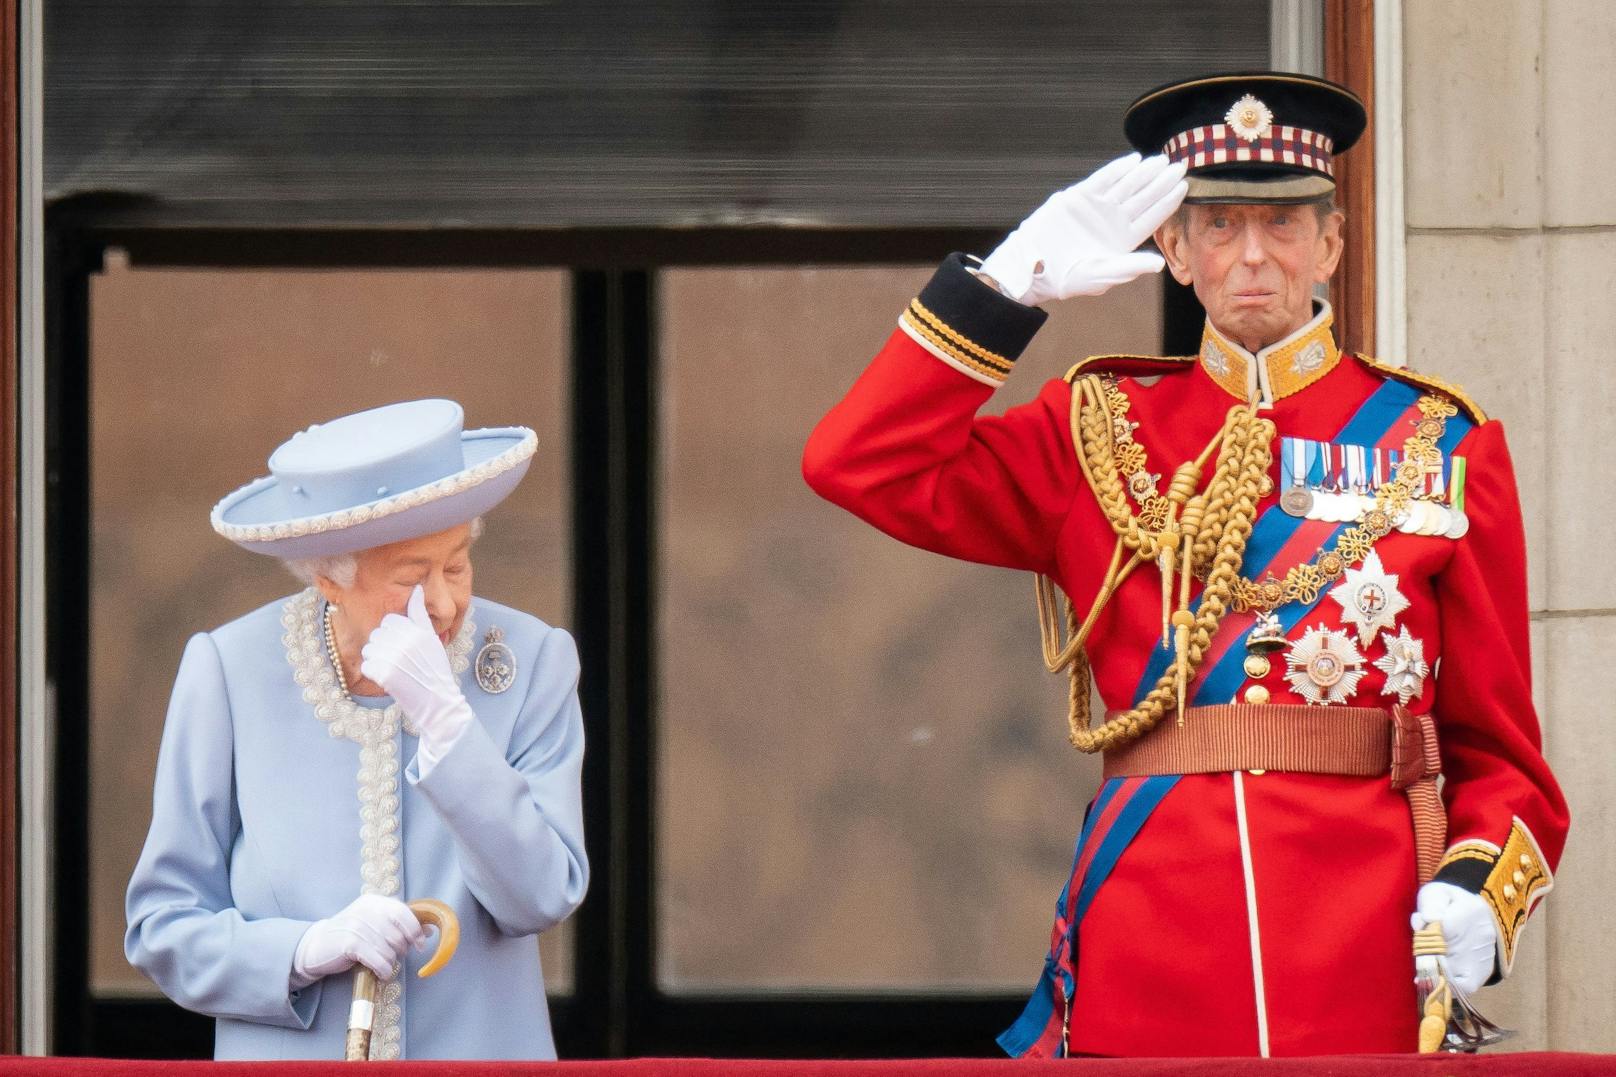 Die Queen zusammen mit Prinz Edvard auf dem Balkon des Palasts – die Fotos erwecken den Eindruck, als hätte die Monarchin Freudentränen verdrückt.